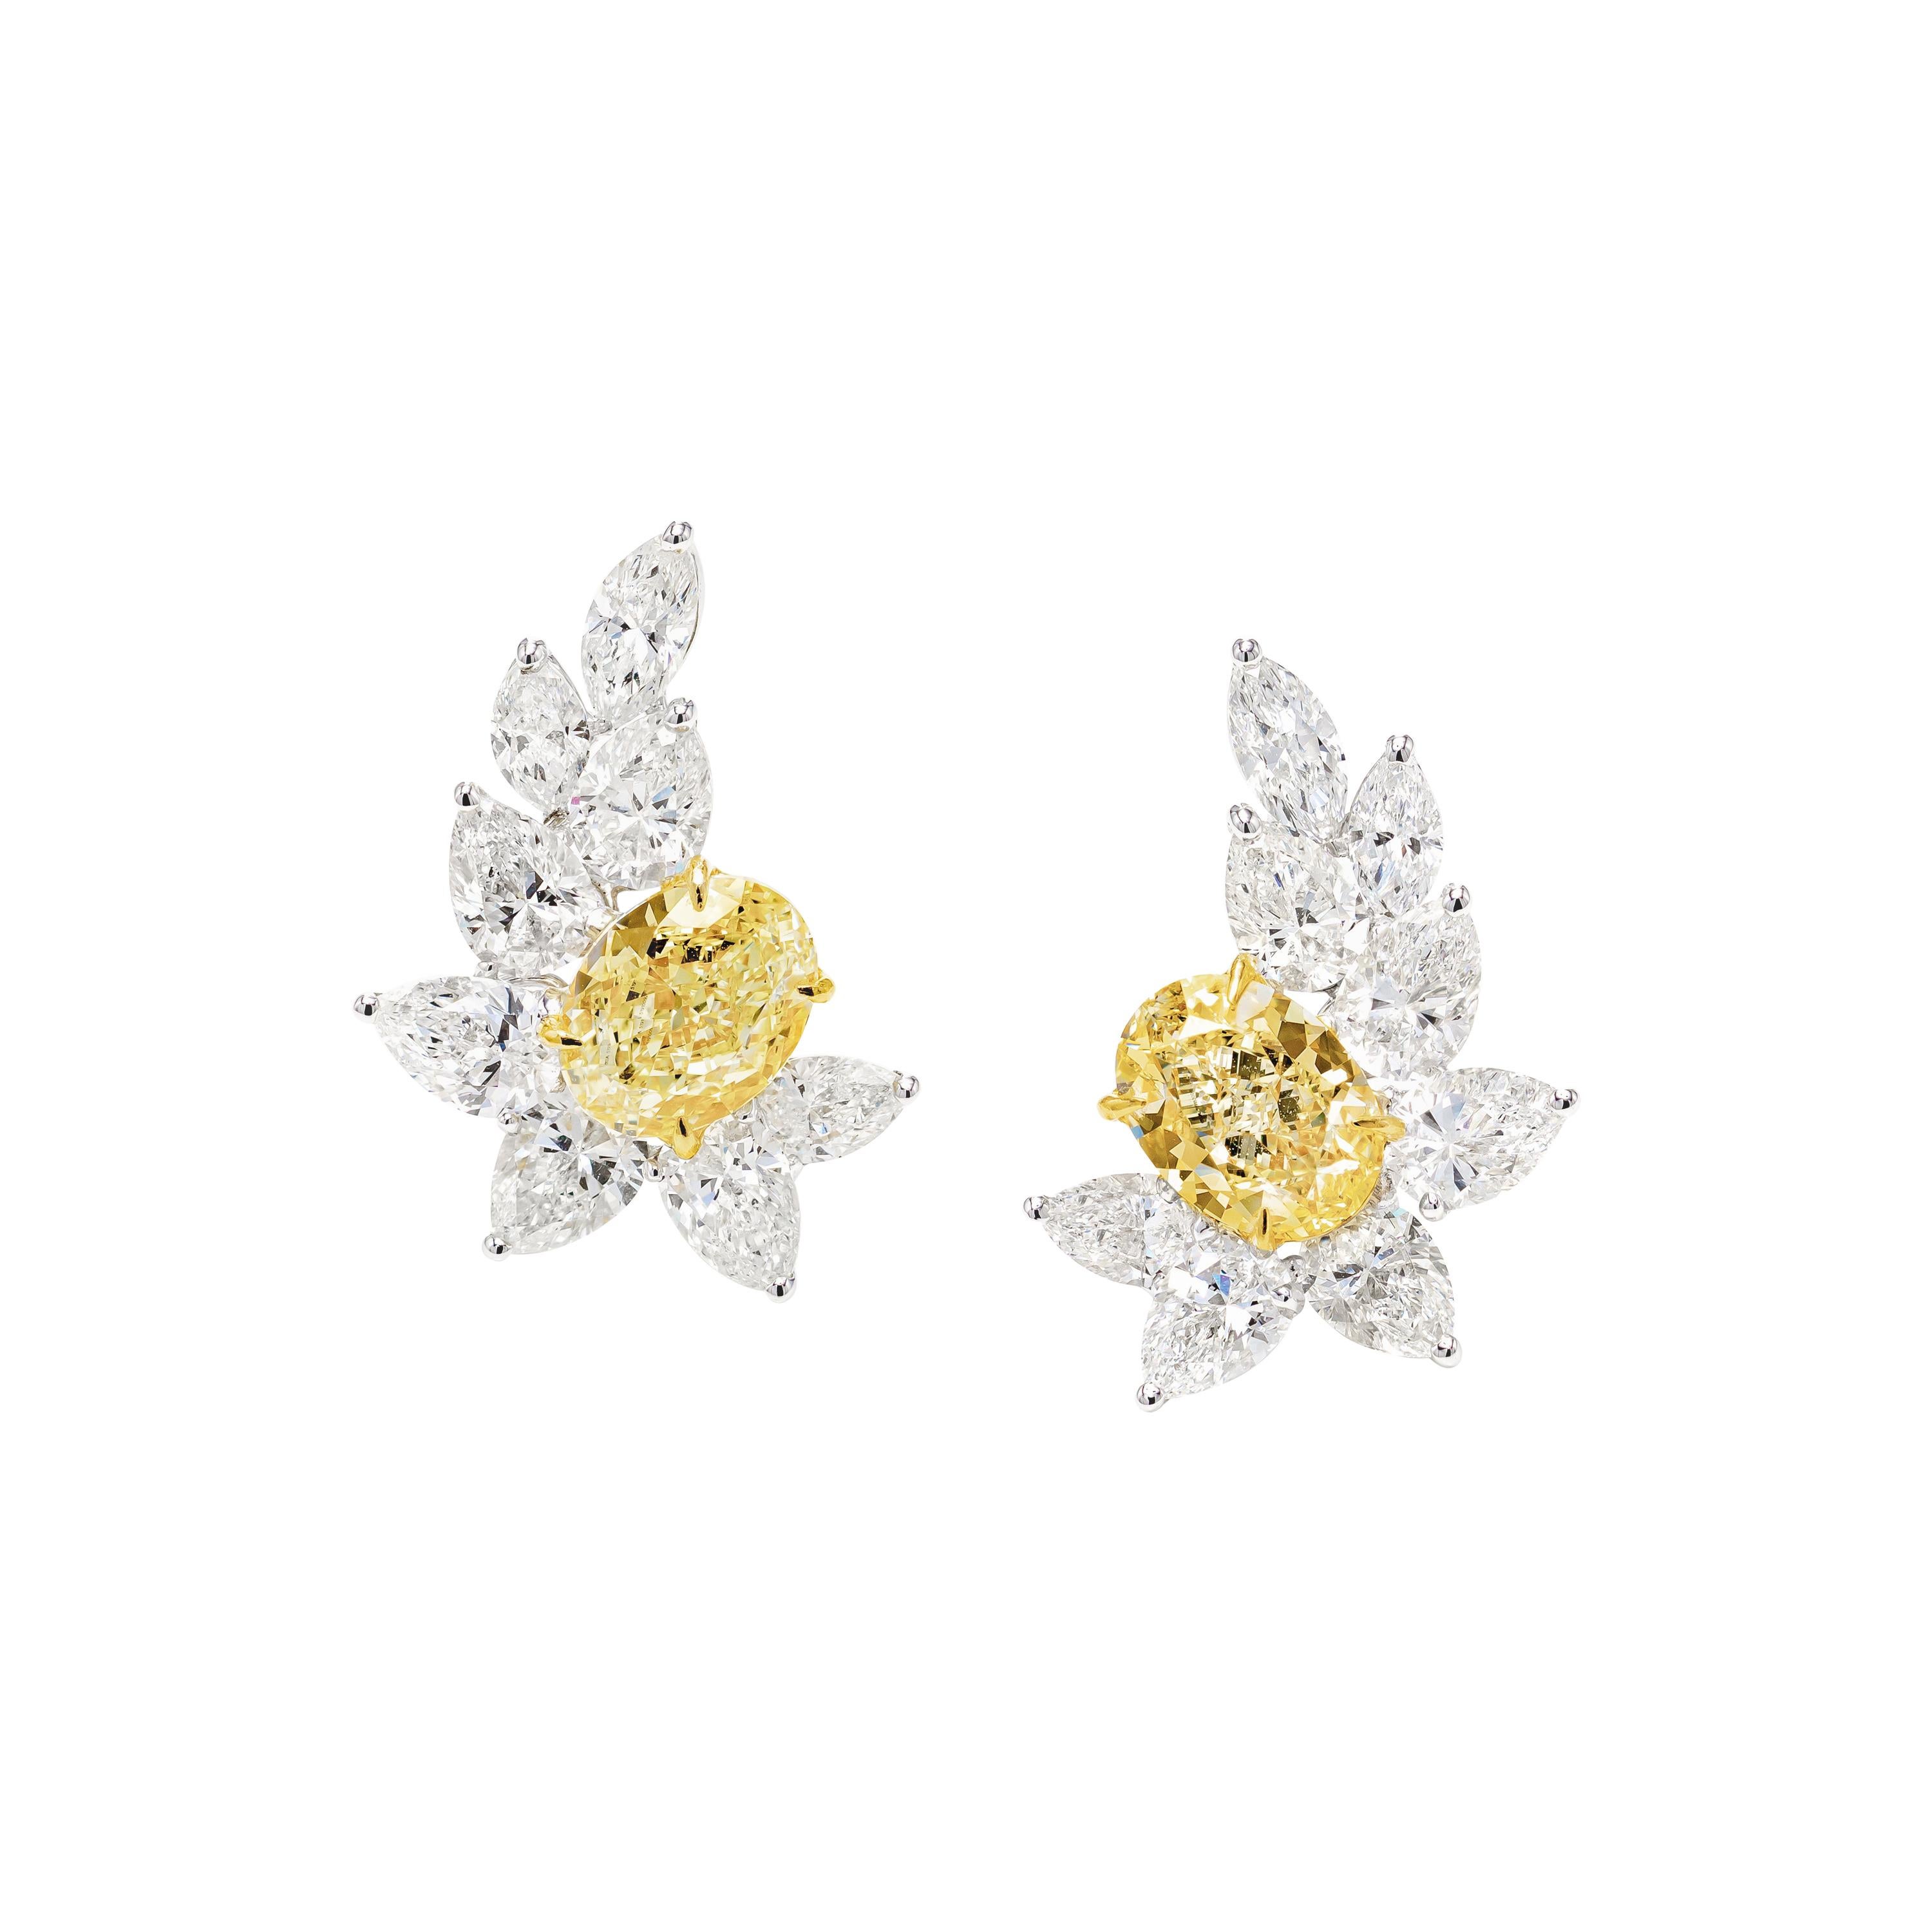 GIA Certified 7.09 Carat Fancy Yellow Oval Diamond Earrings in 18K Gold